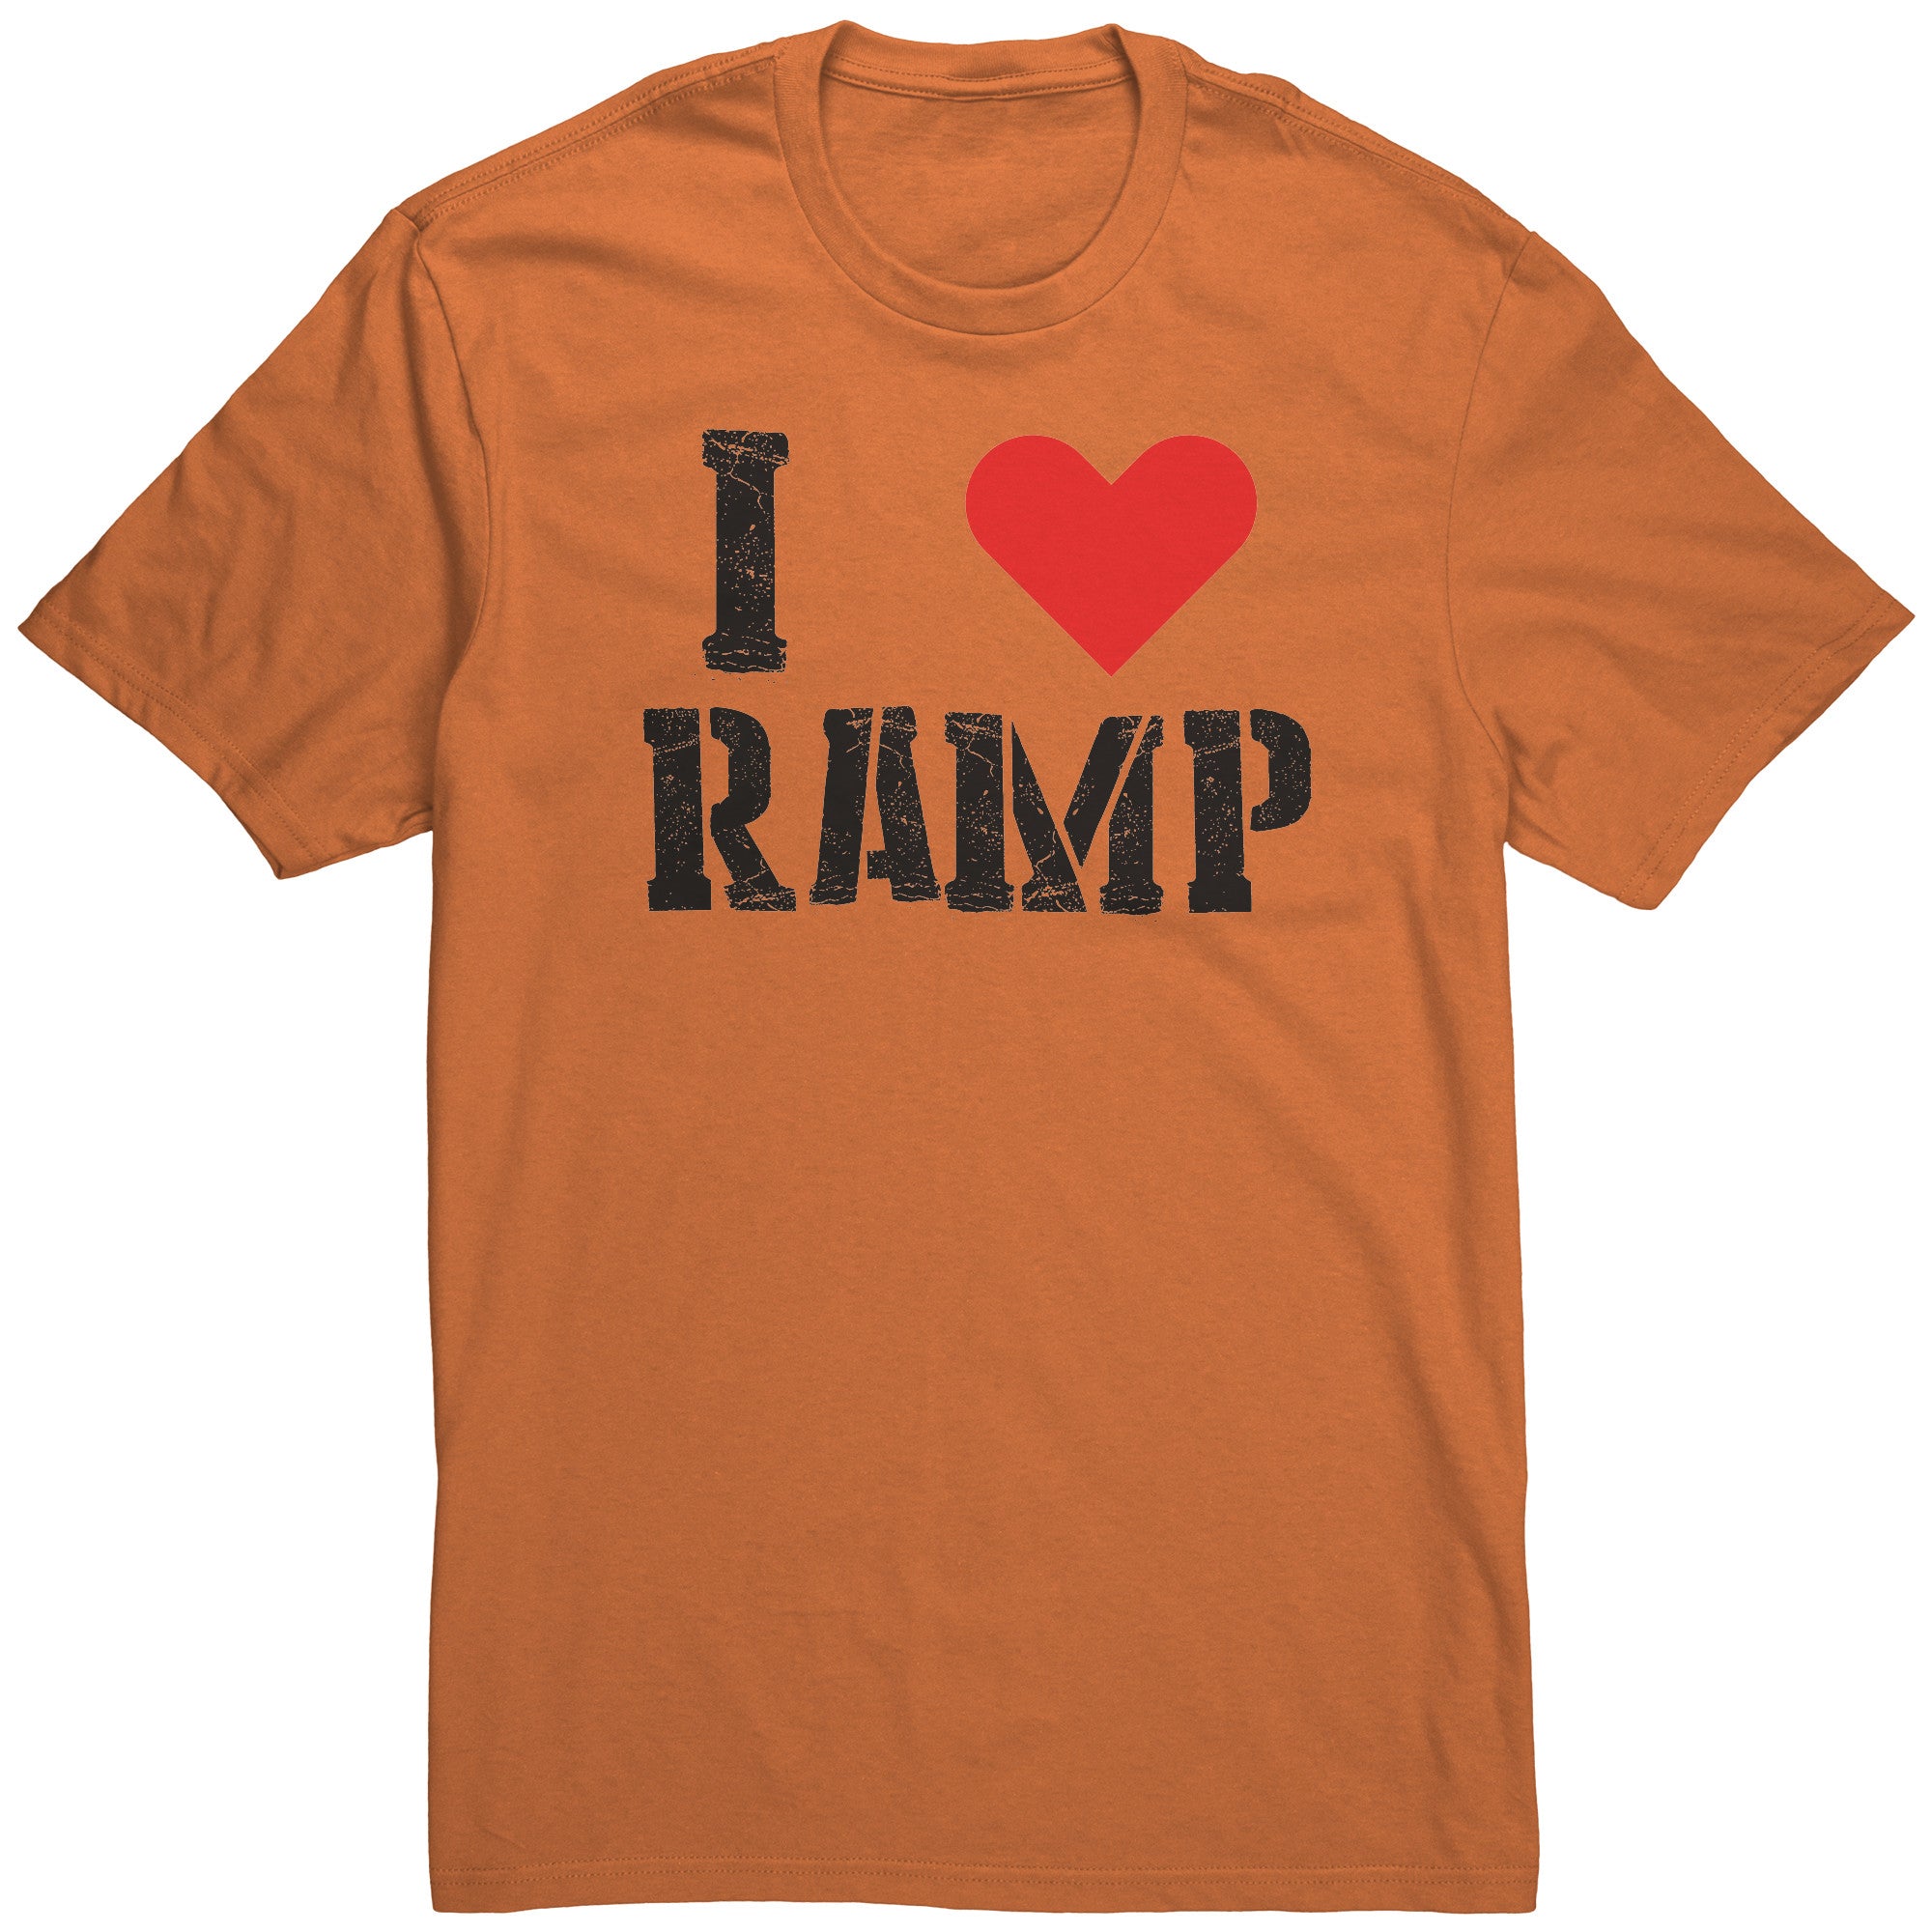 I LOVE RAMP CREW T-SHIRT